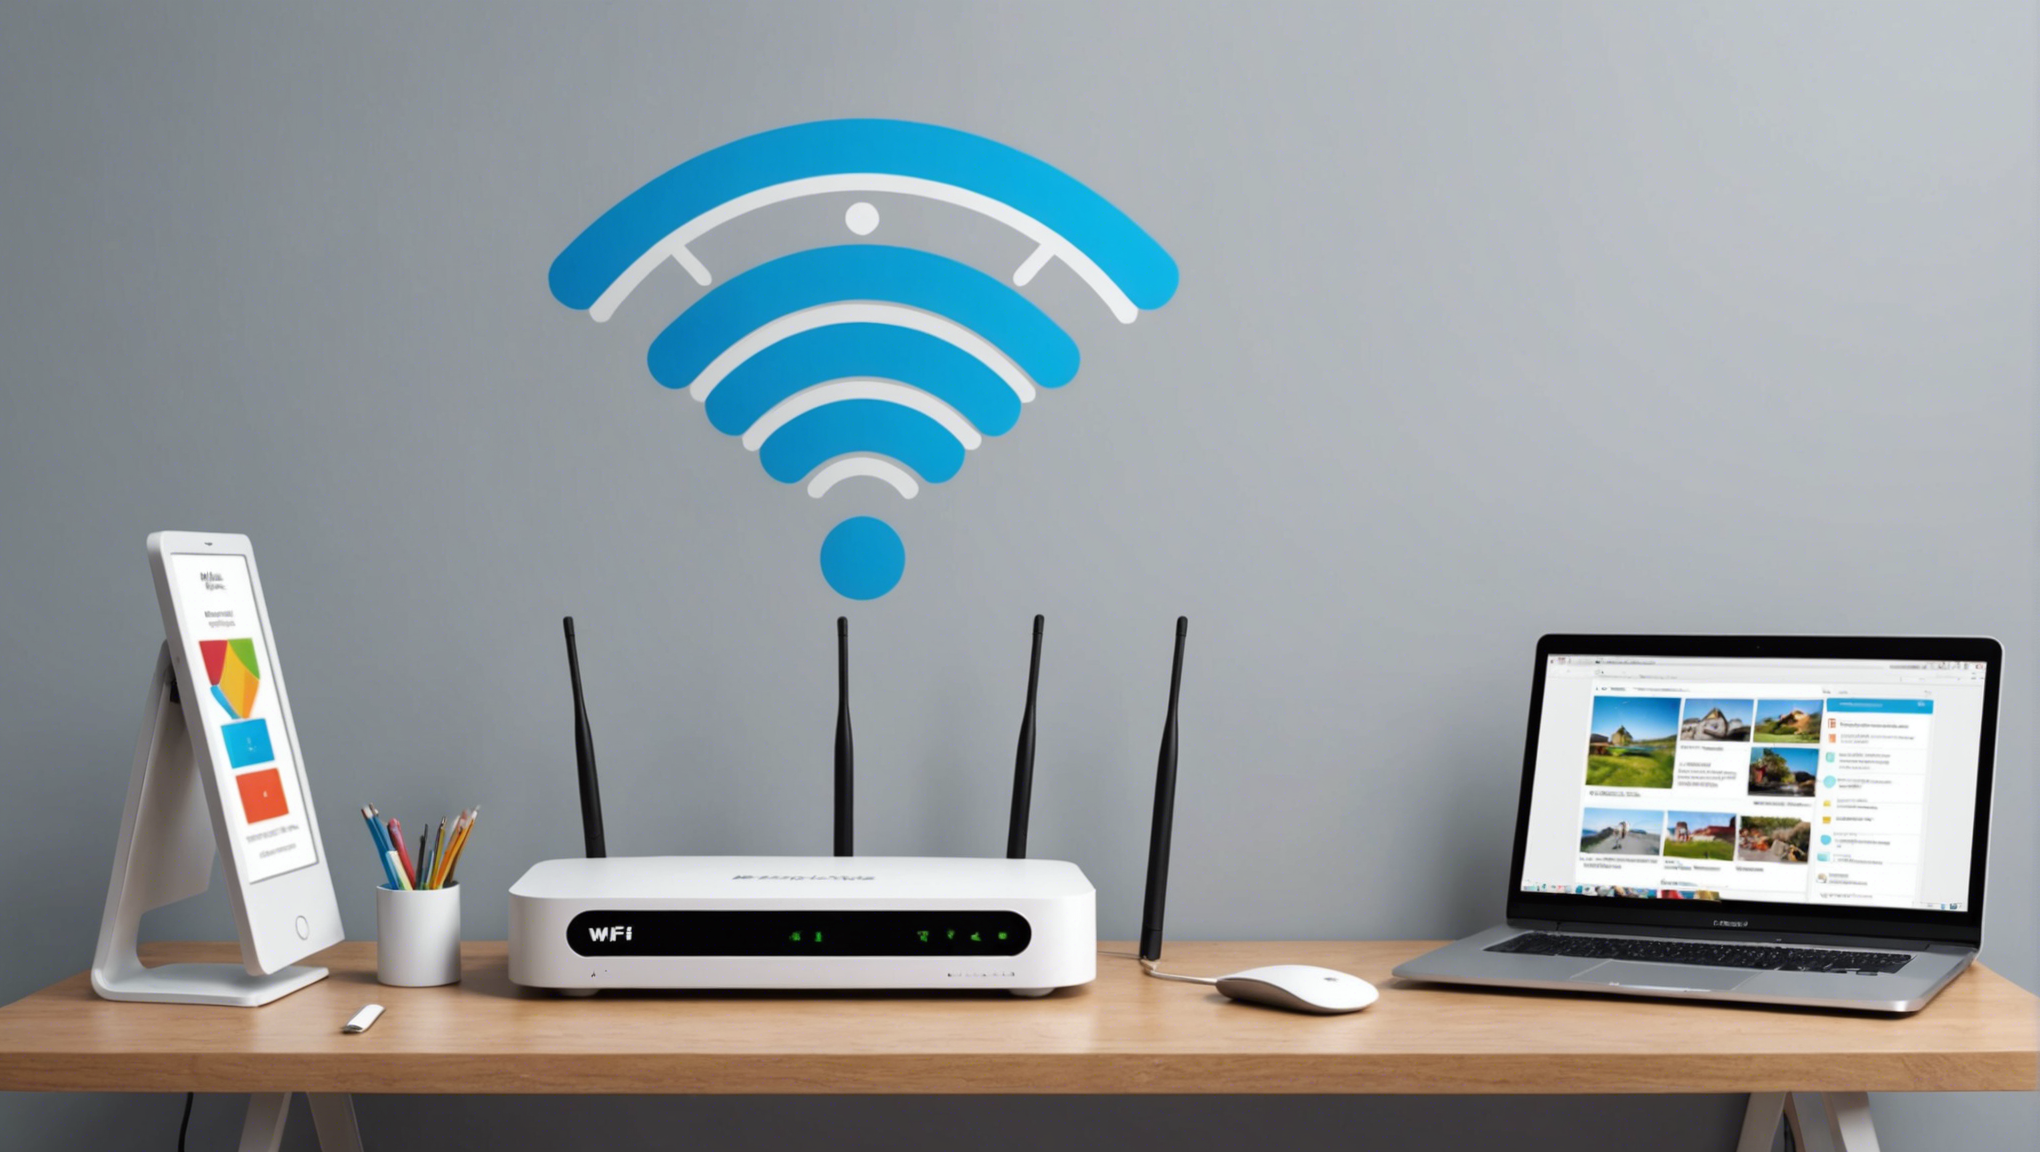 découvrez comment améliorer la couverture wi-fi de votre réseau en utilisant un point d'accès. suivez nos astuces pour renforcer la connectivité dans votre domicile ou votre entreprise.